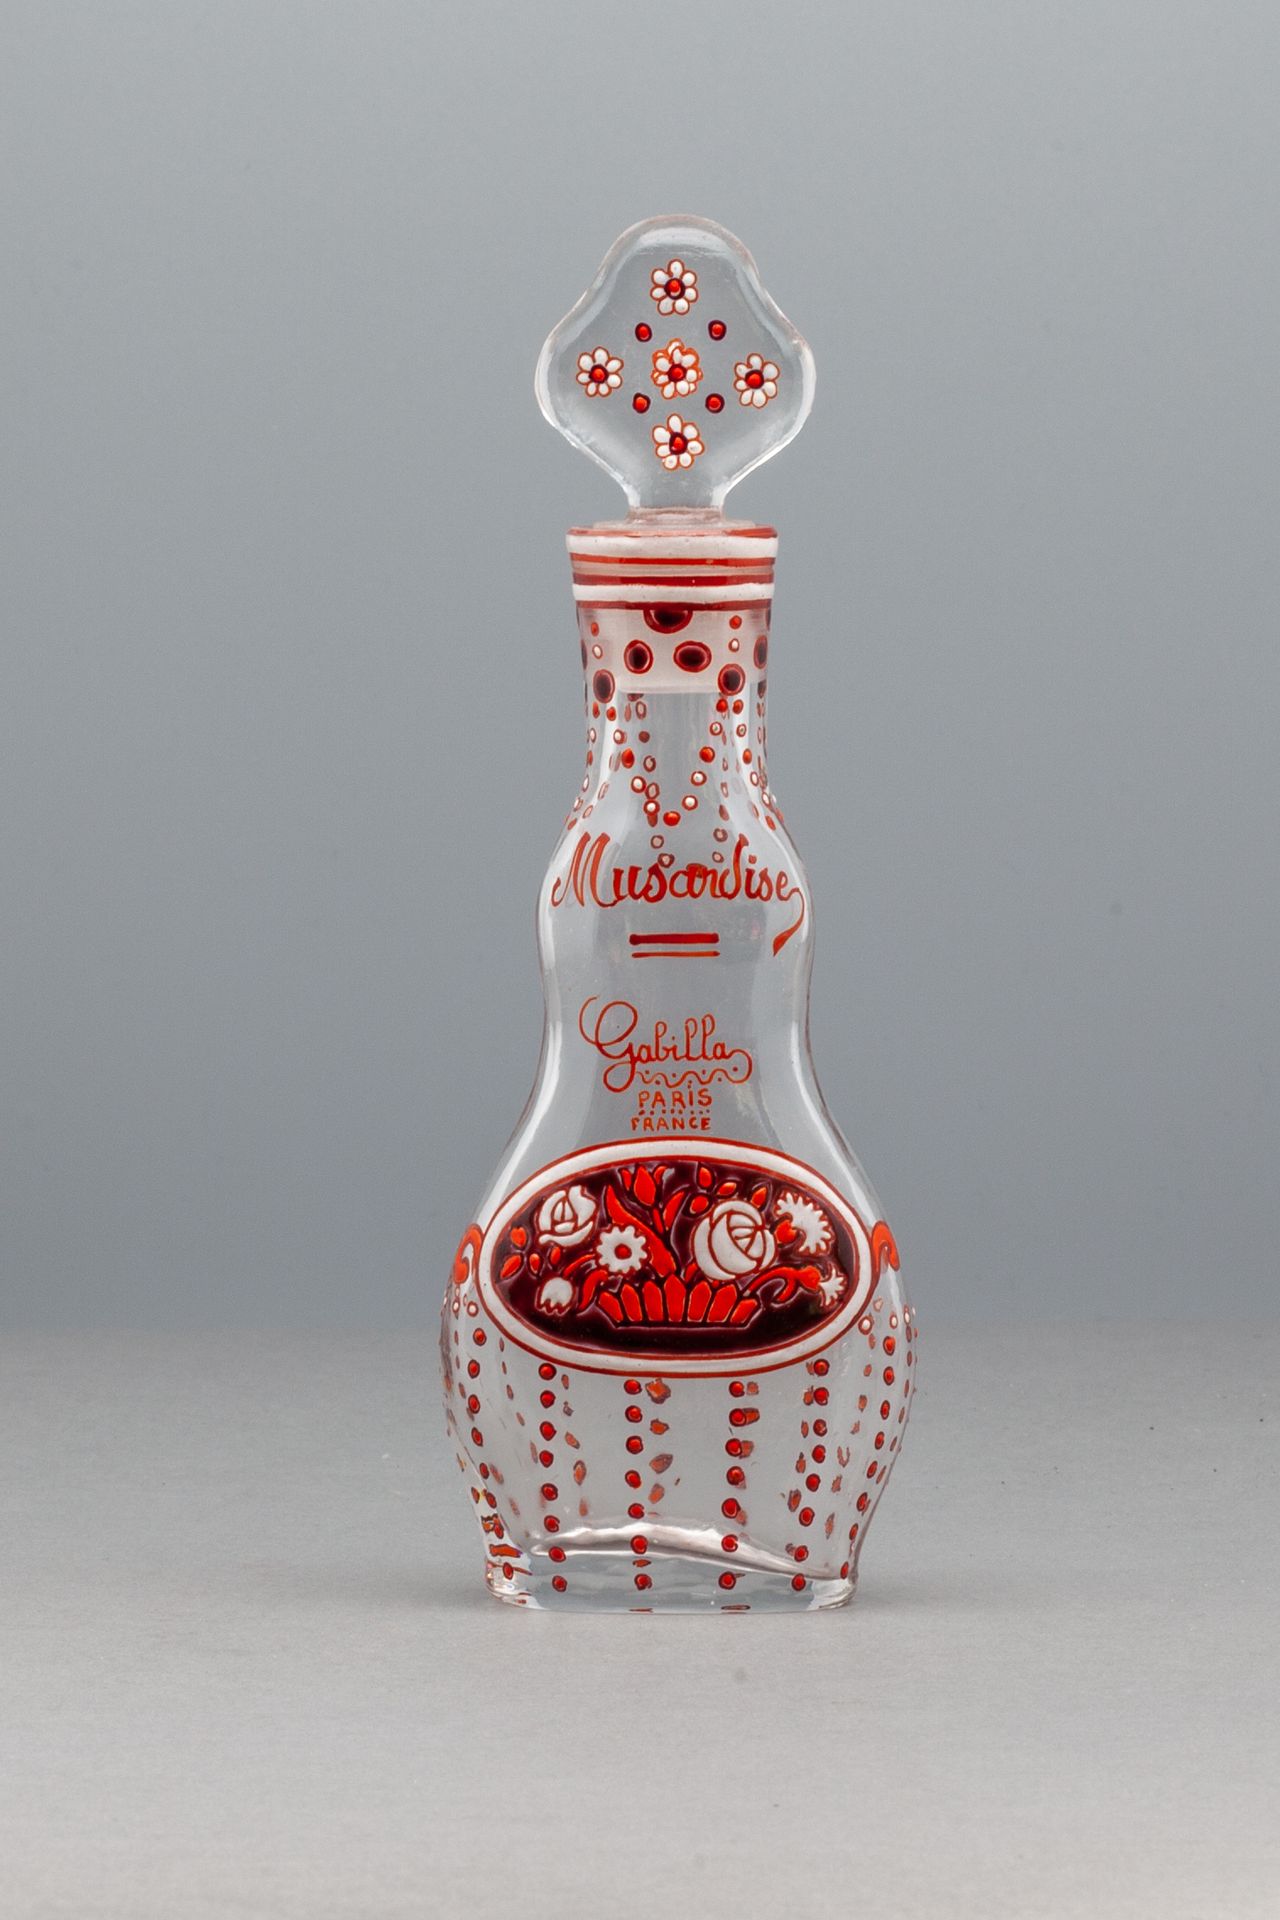 GABILLA "MUSARDISE" Botella de vidrio incoloro con base ovalada y lados ondulado&hellip;